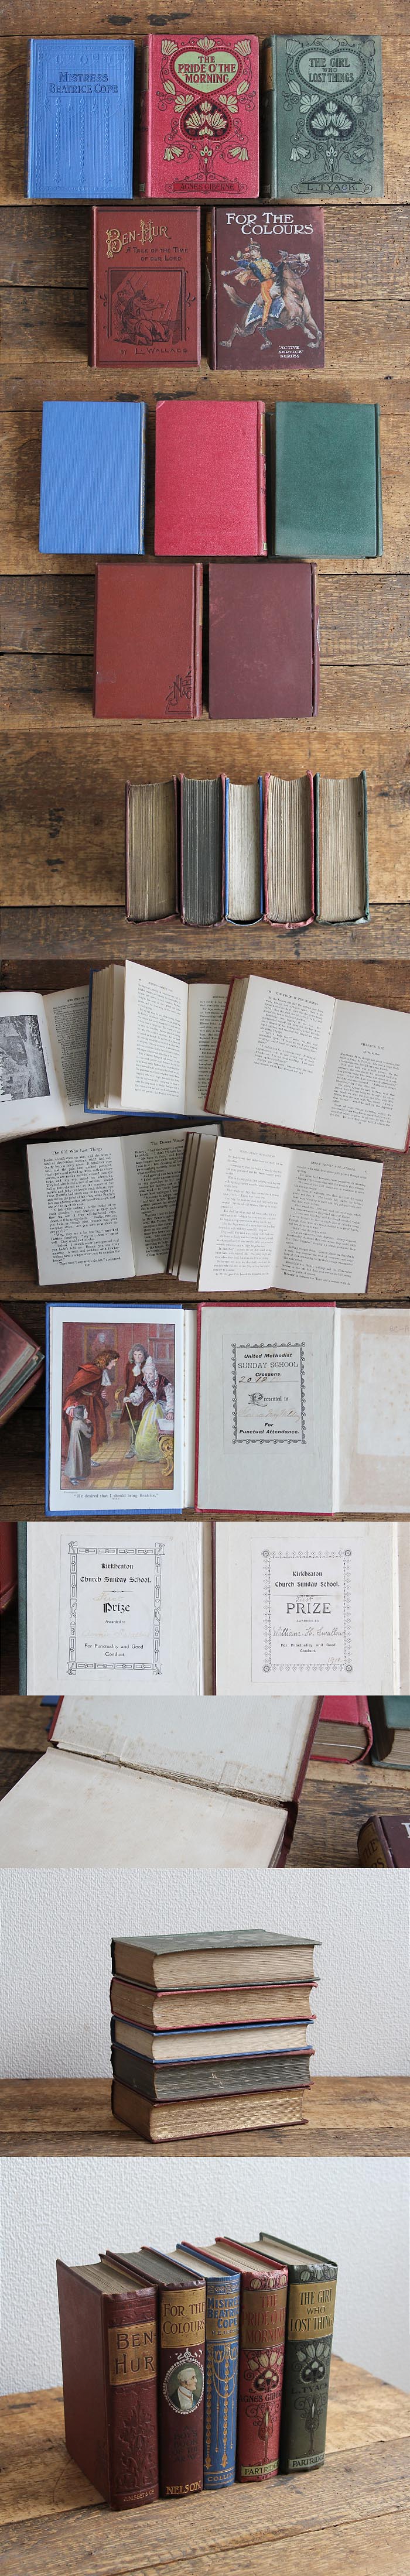 イギリス アンティークブック 5冊セット 古書 インテリア雑貨 洋書 